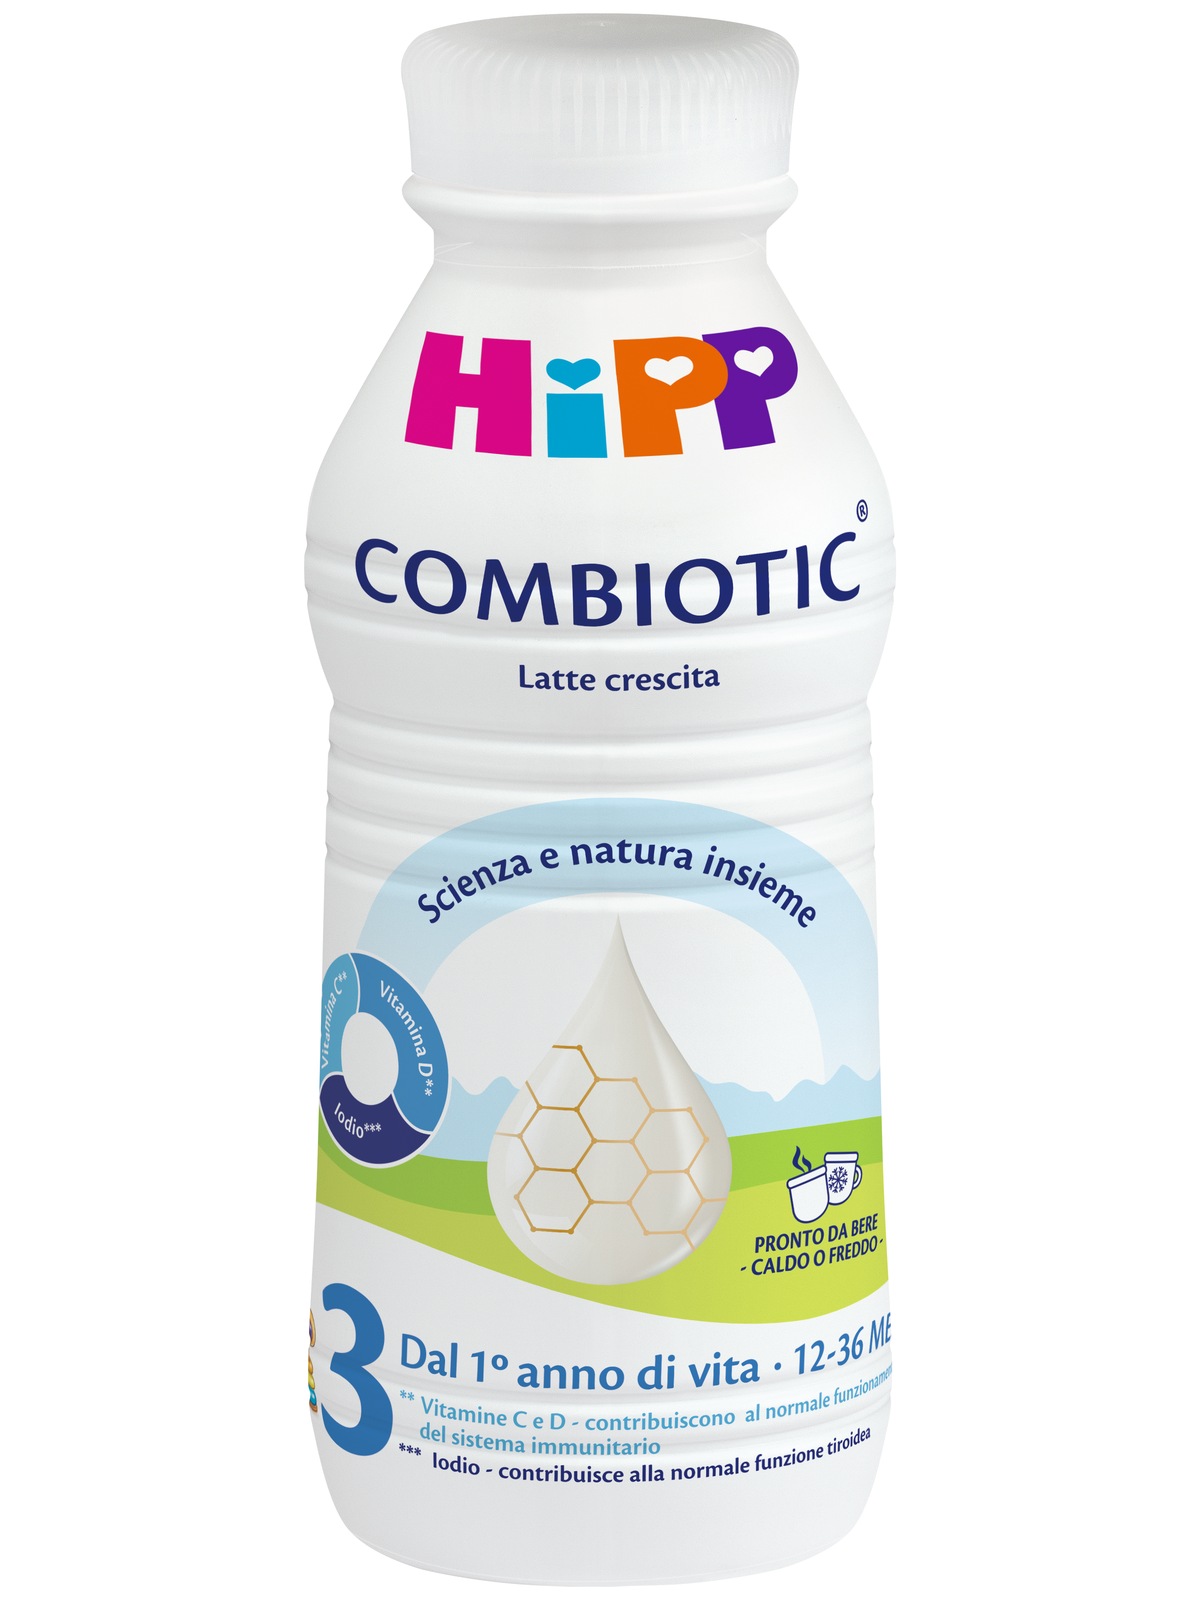 Hipp Latte 1 Combiotic Latte Liquido dalla Nascita al 6 mese 470ml